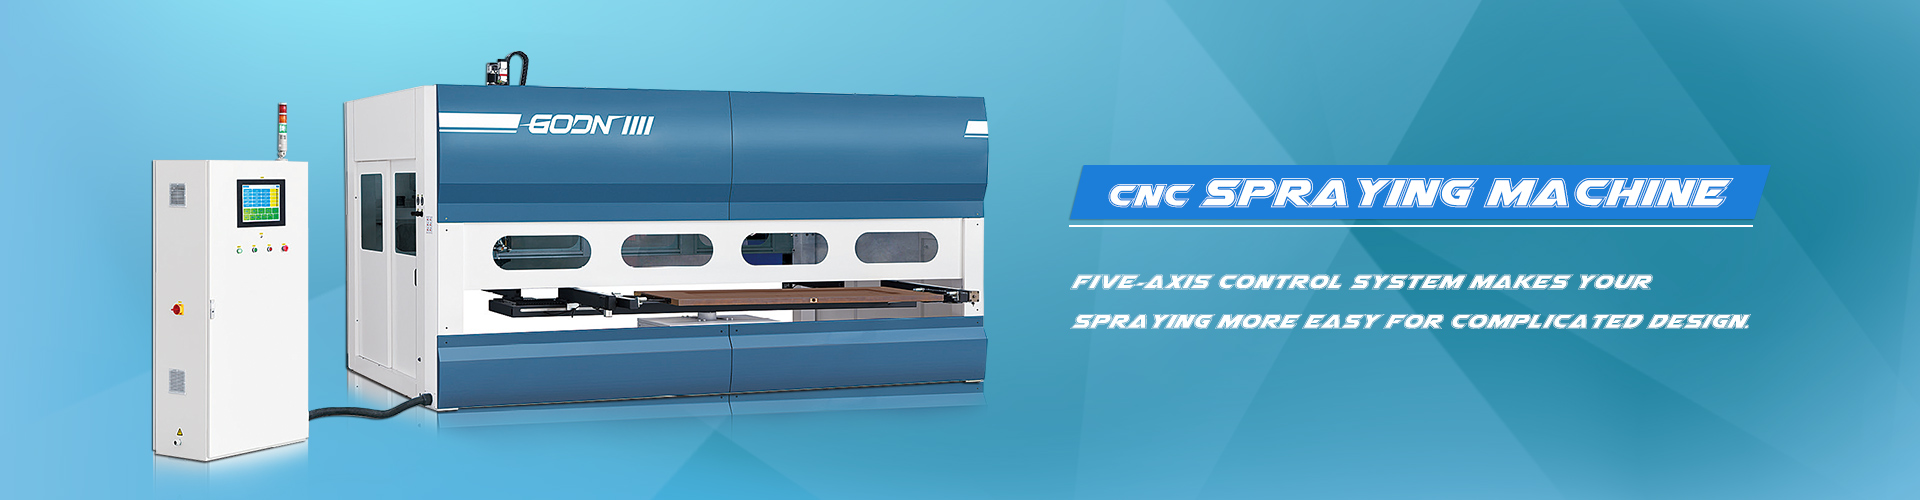 máquina de pulverização CNC